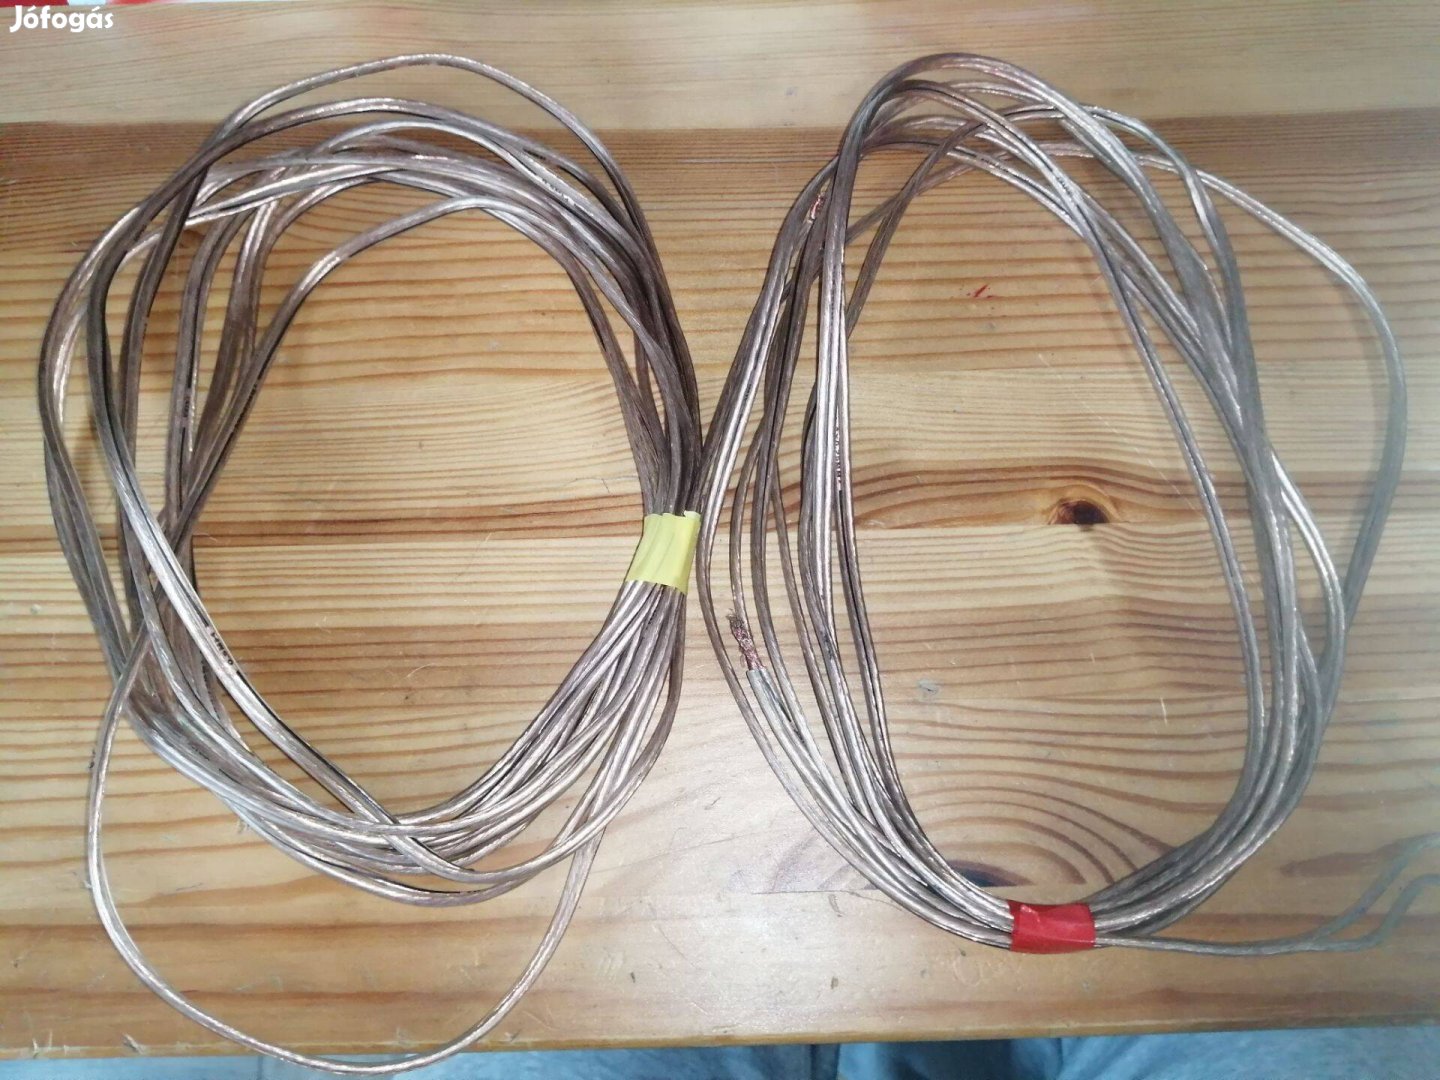 Jamo OFC hangfal hangszóró kábel vezeték 10 méter! 2 x 0,75 mm2